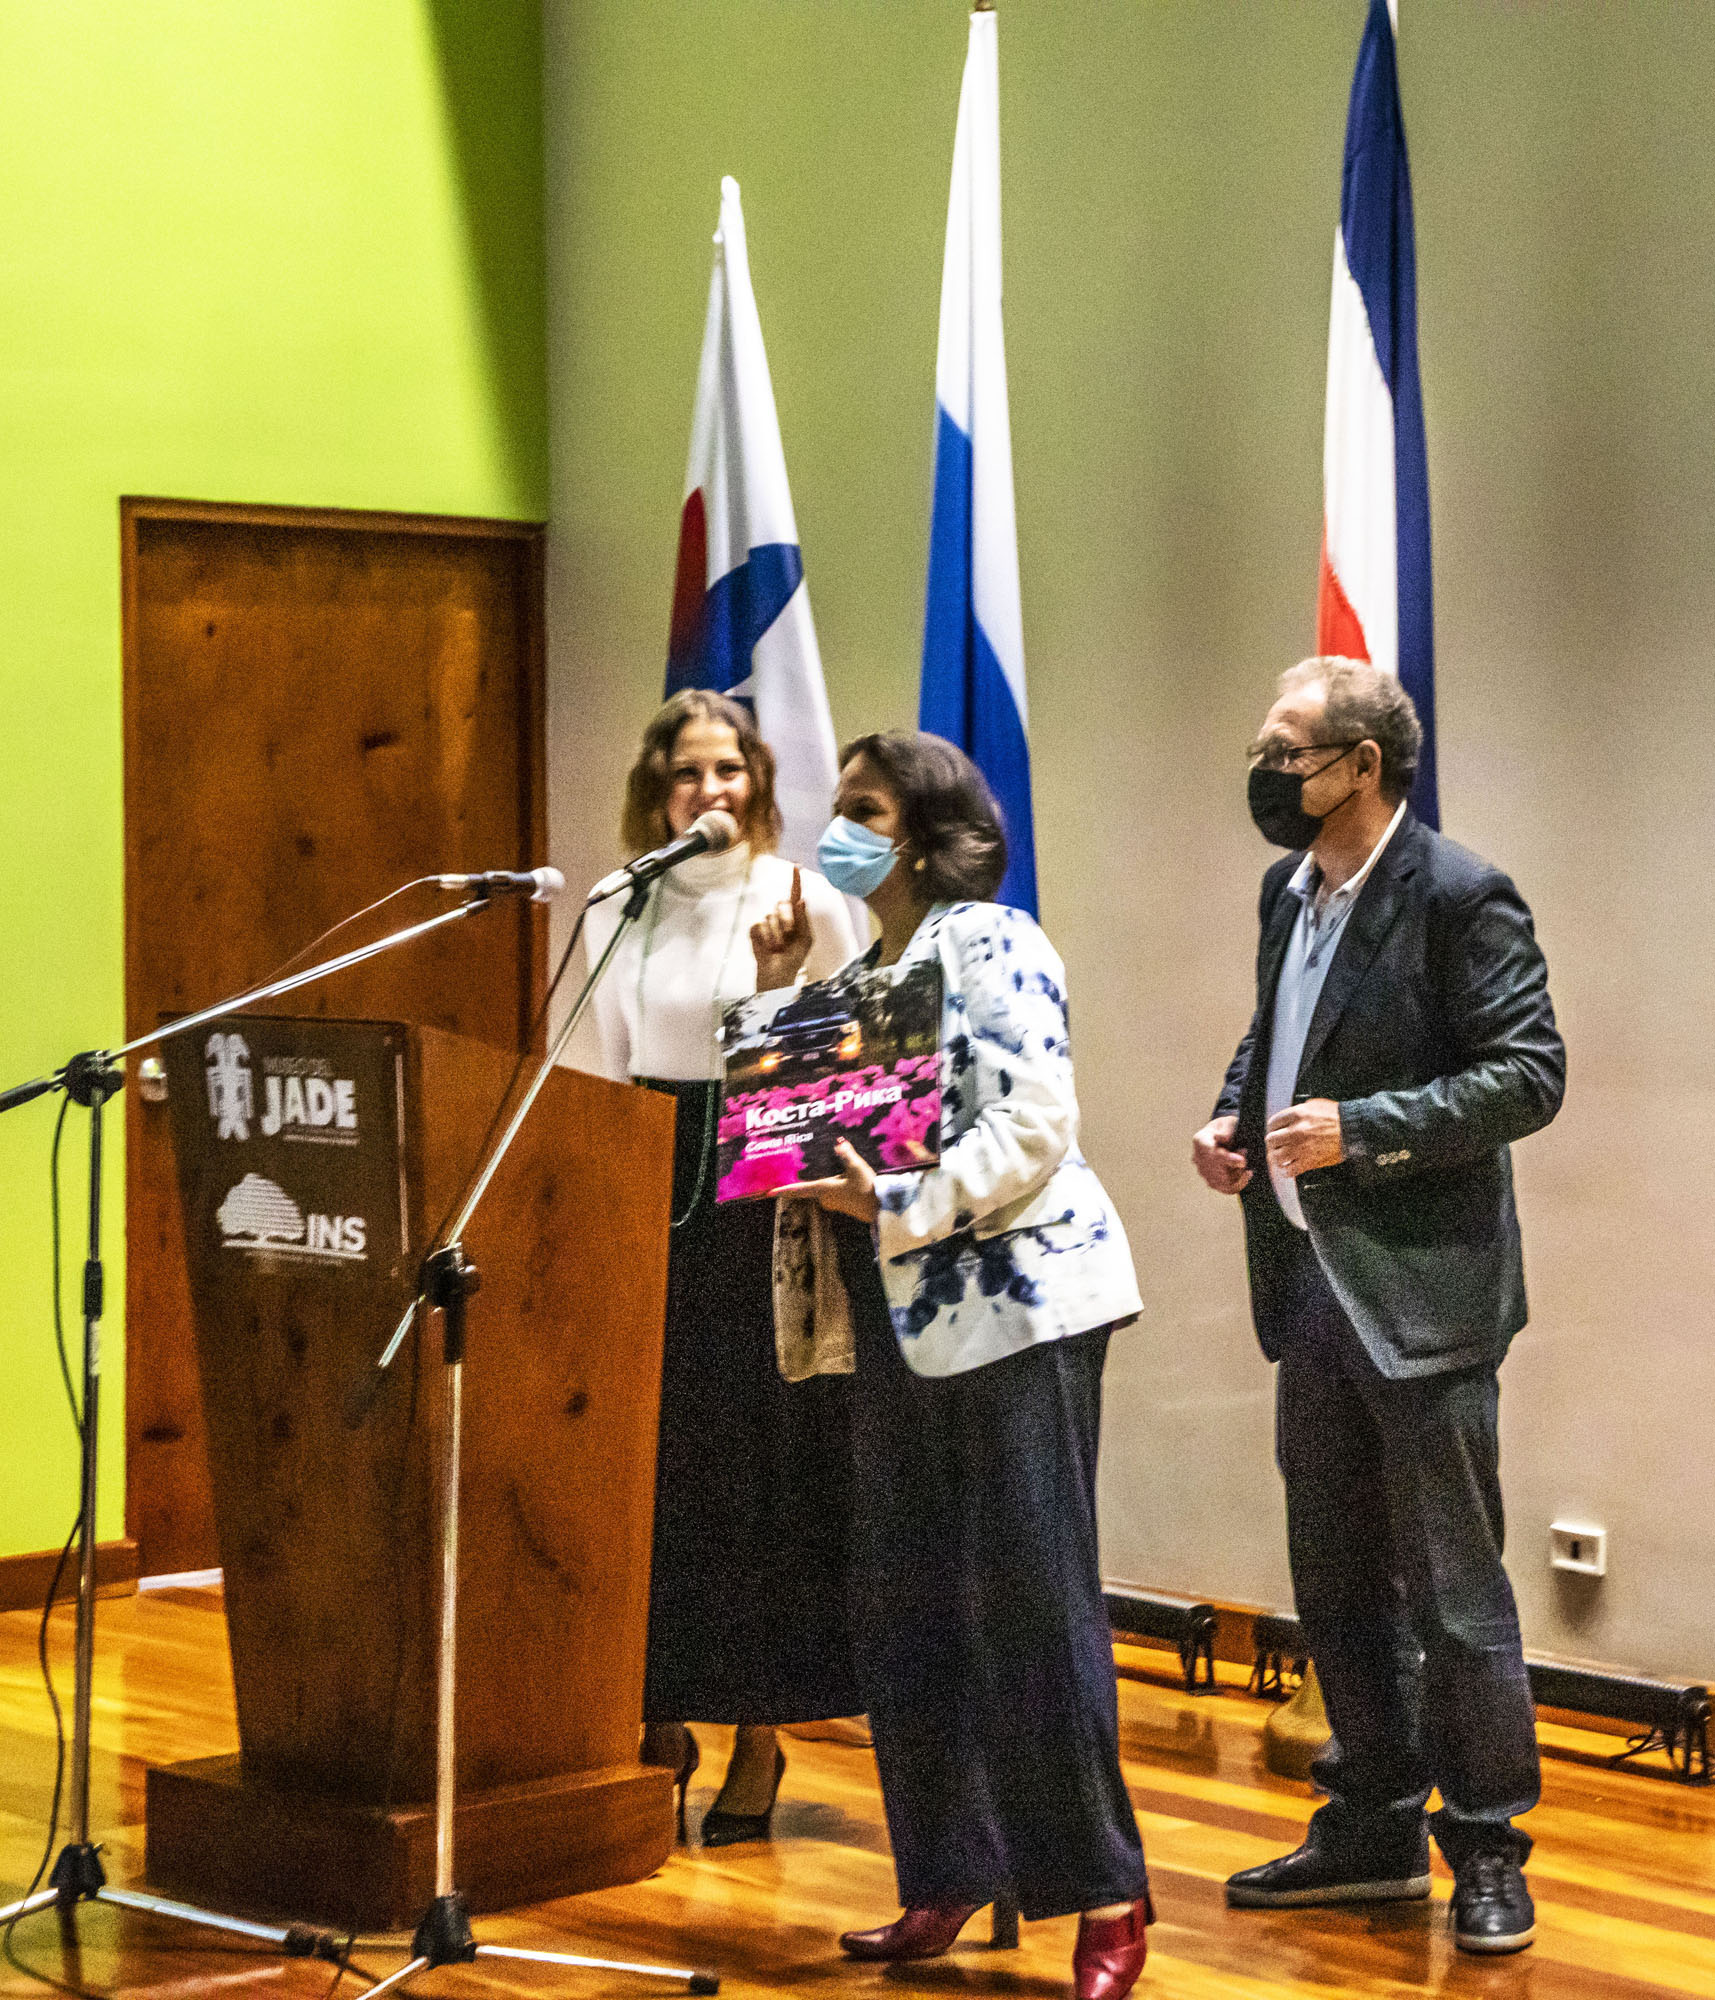 Открытие выставки «Коста-Рика — 200 лет. Люди, создающие страну» в Сан-Хосе, Коста-Рика